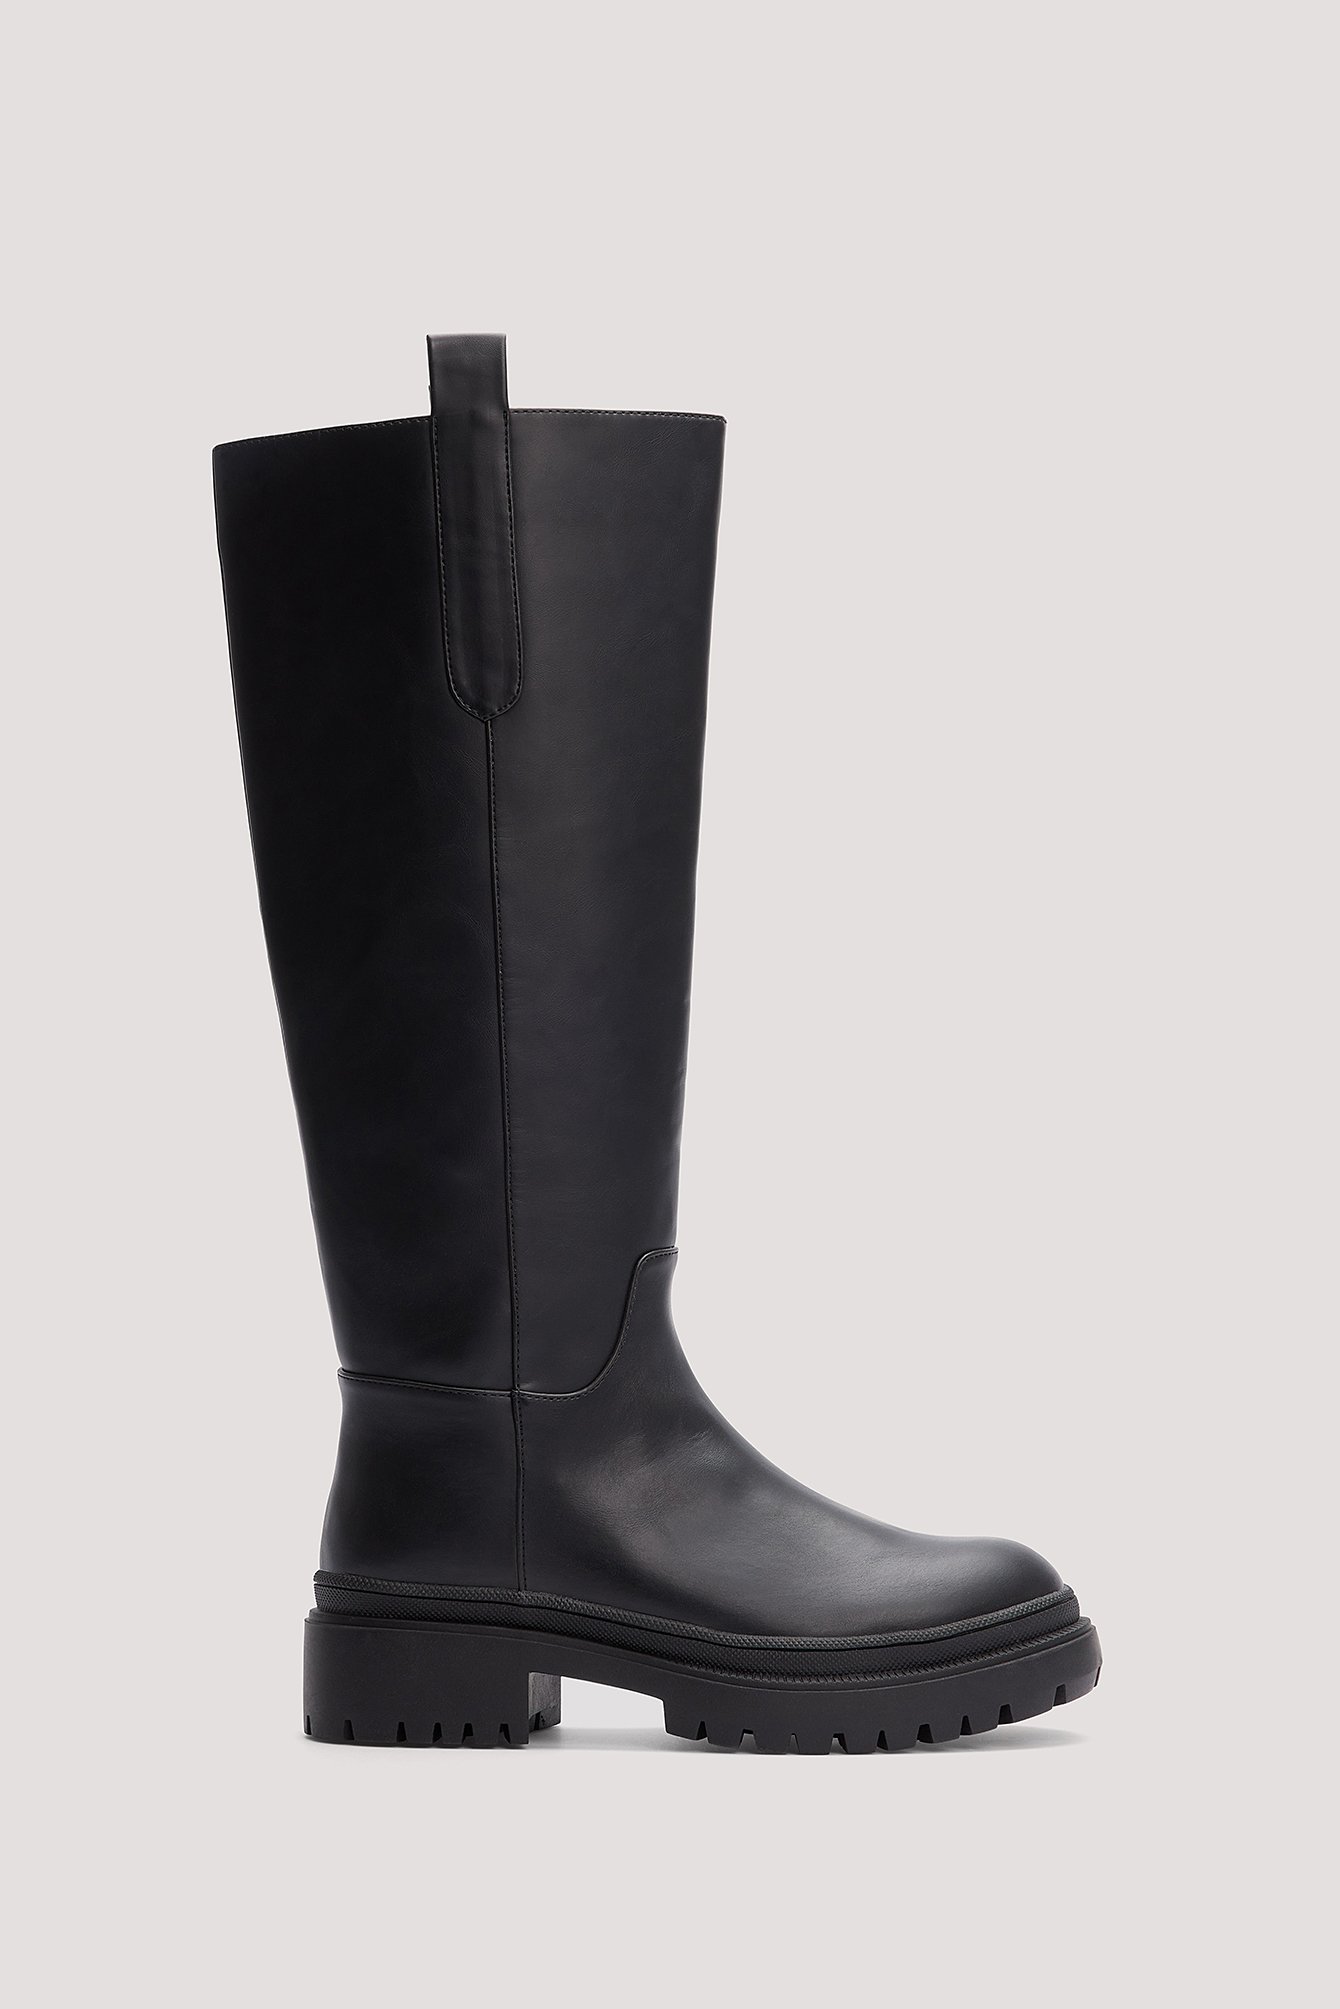 Rianne Meijer x NA-KD Boots med högt skaft och matt yta - Black